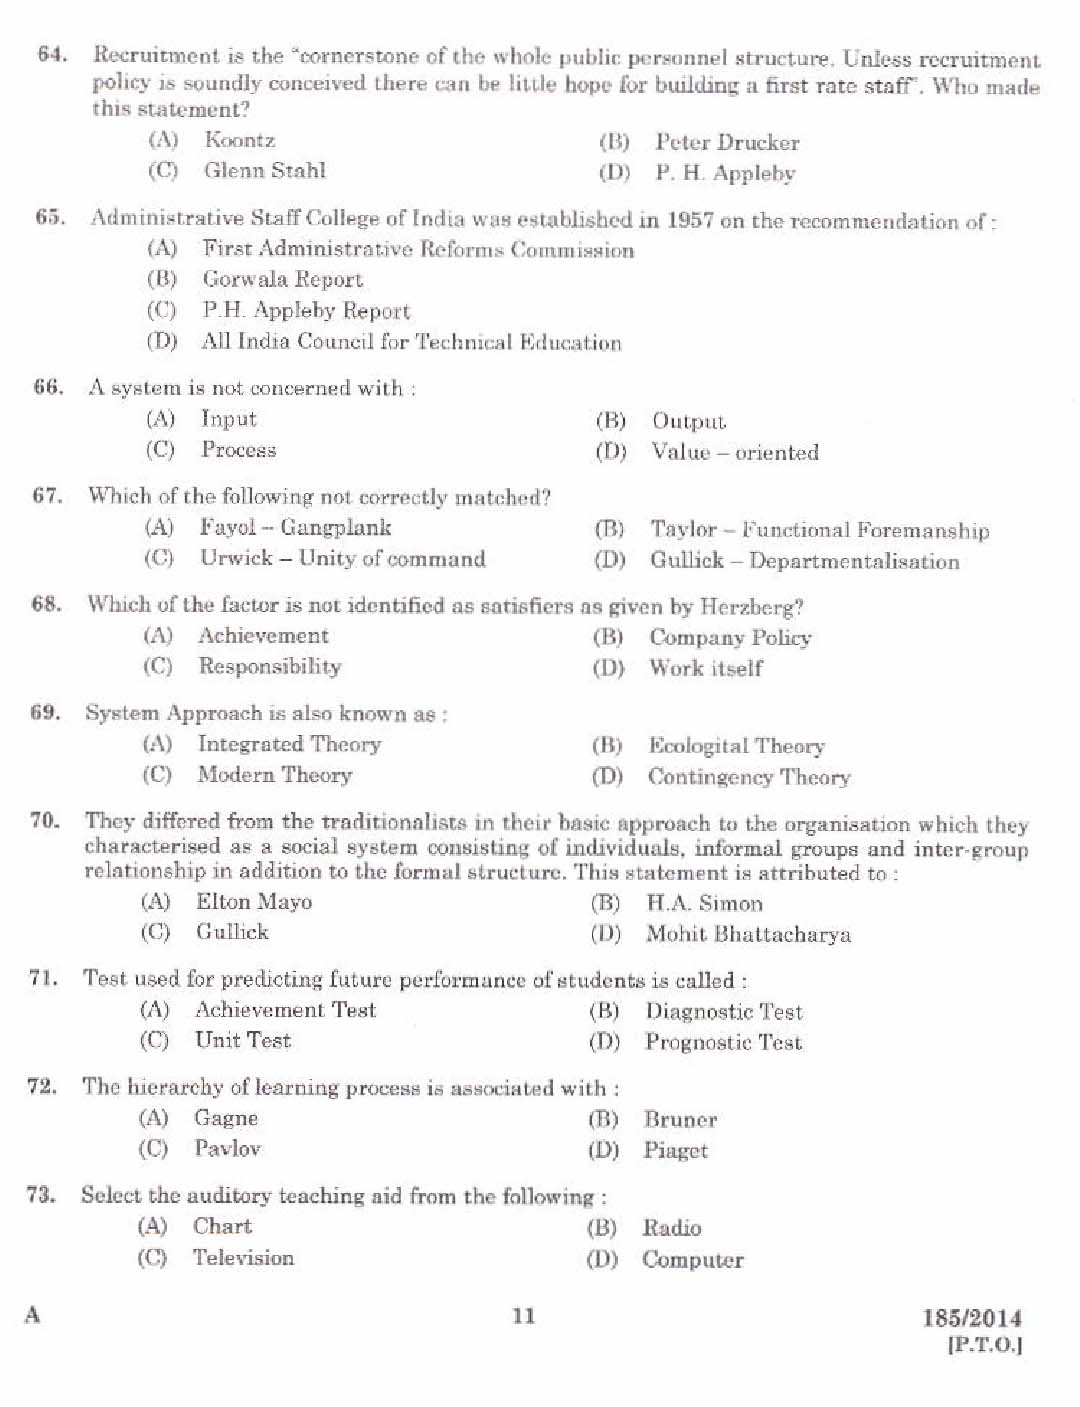 KPSC Lecturer in Public Administration Exam 1852014 9